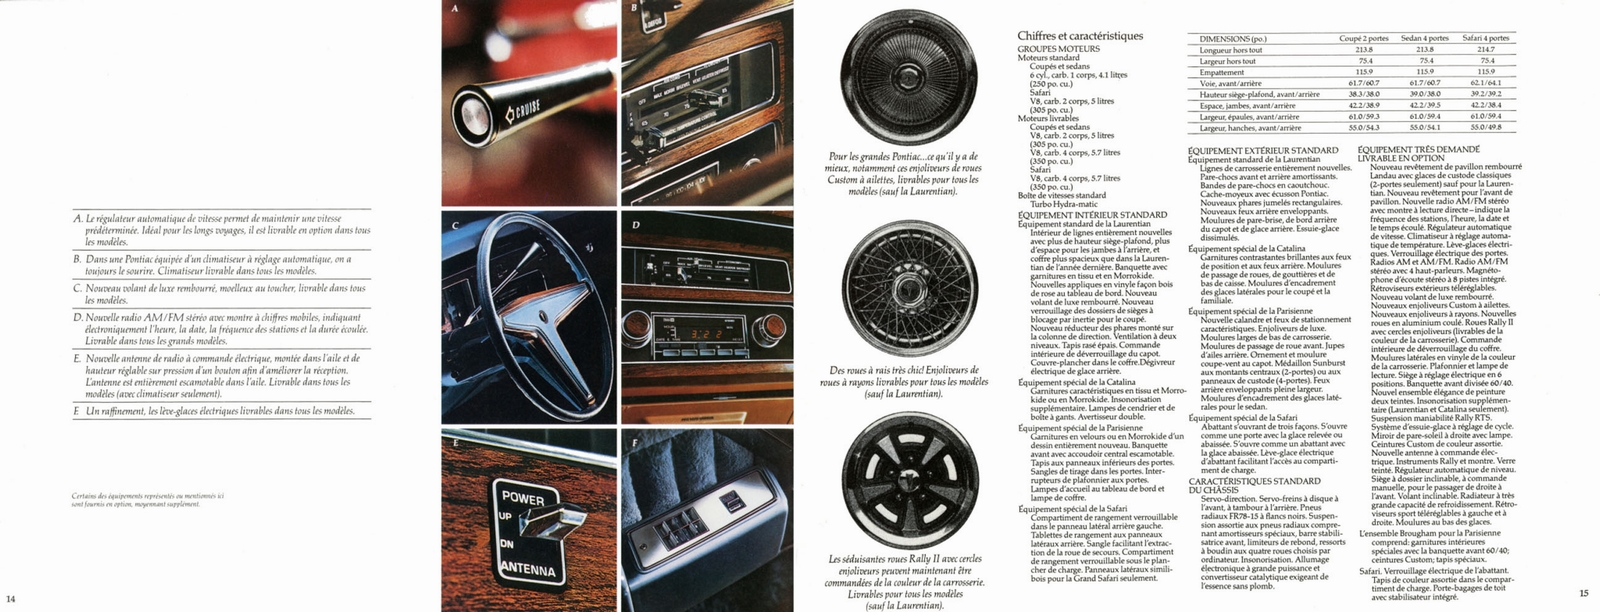 n_1977 Pontiac Full Size (Fr)-14-15.jpg